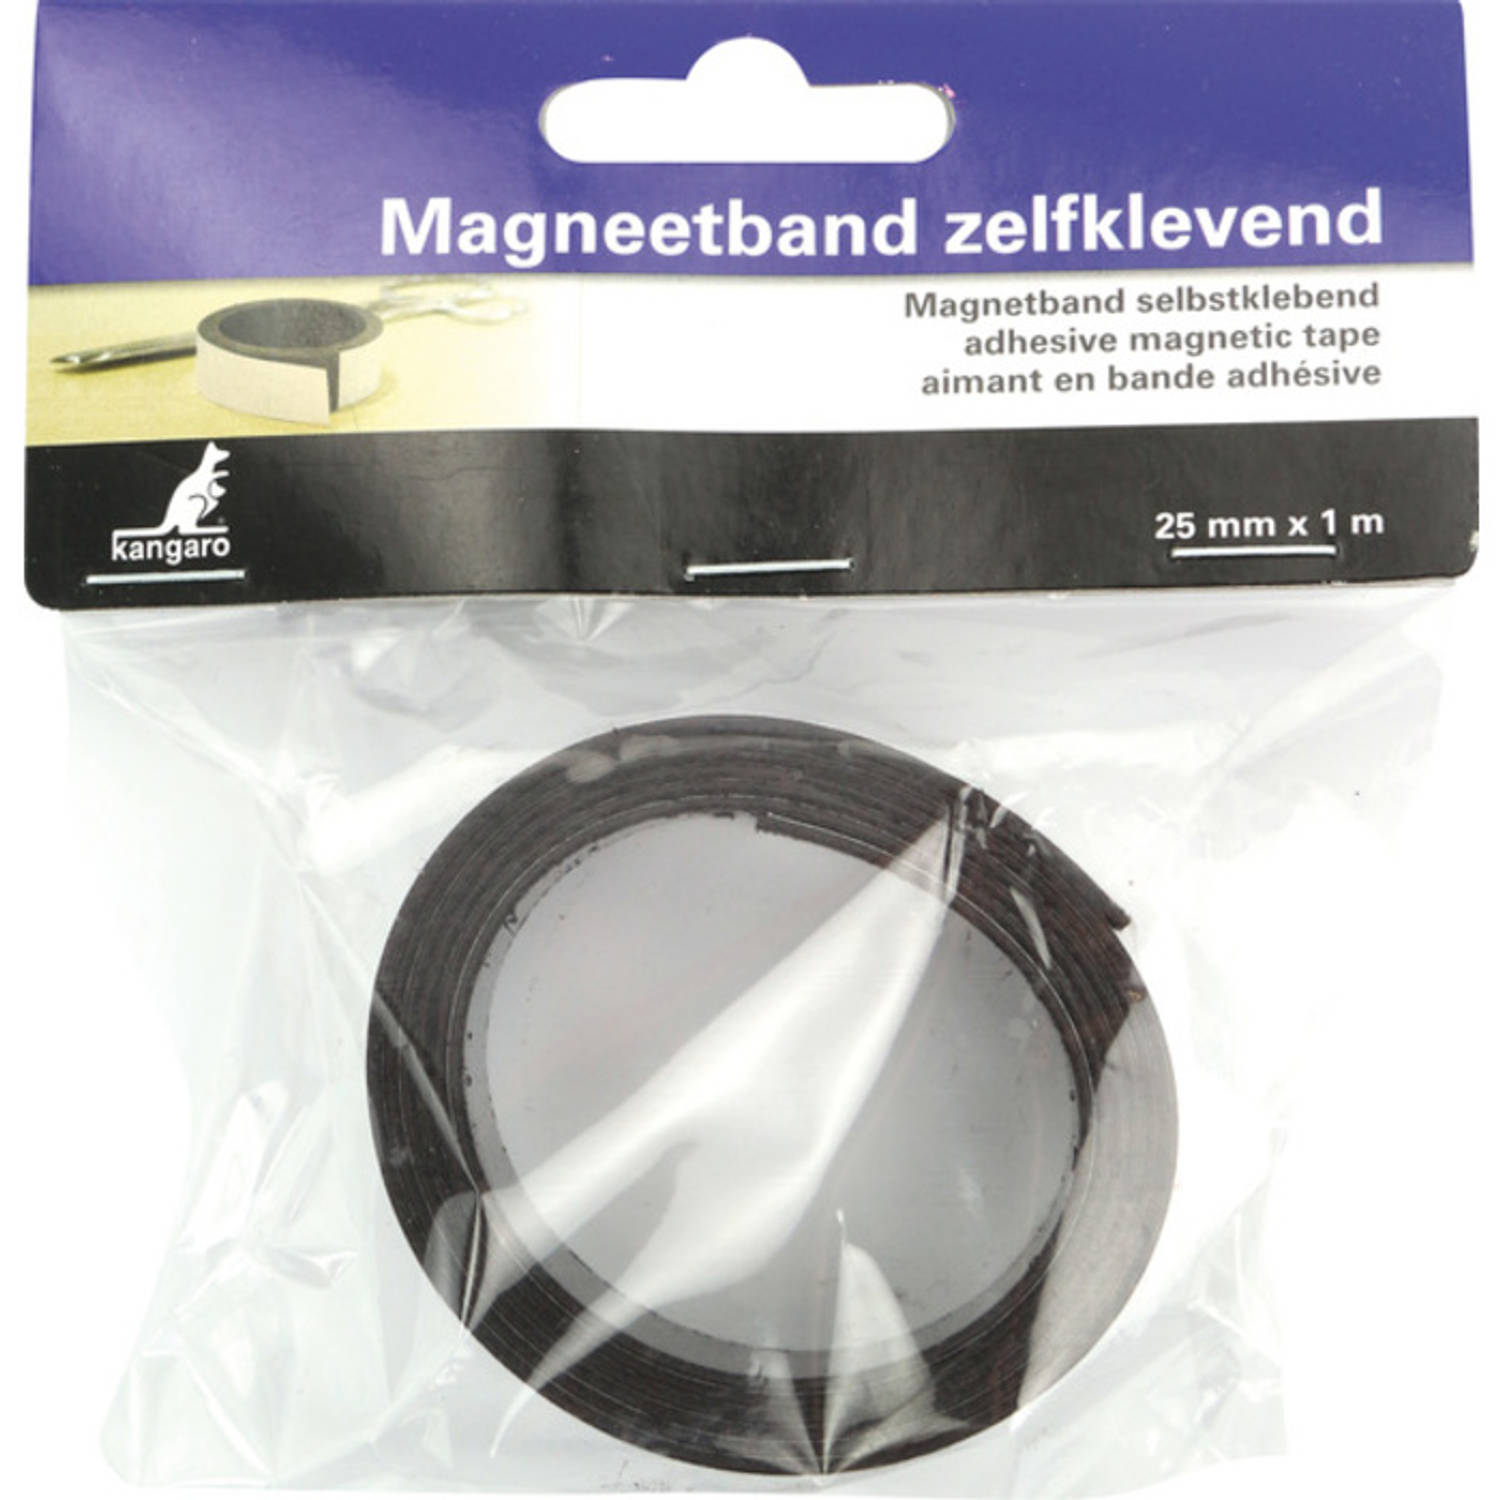 Kangaro Magneetband Zelf-klevend 25mm X 1 Meter